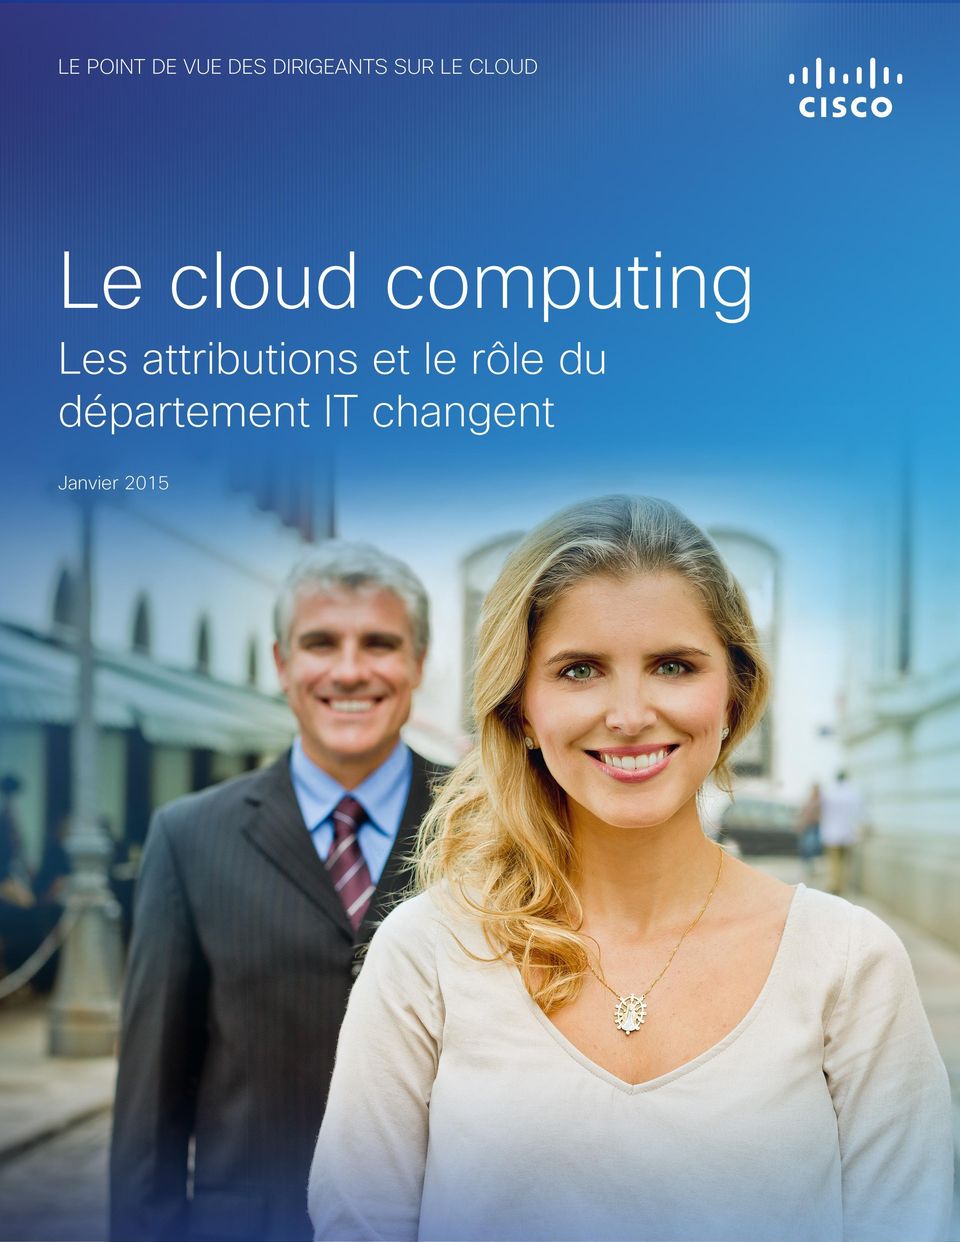 Le cloud computing Les attributions et le